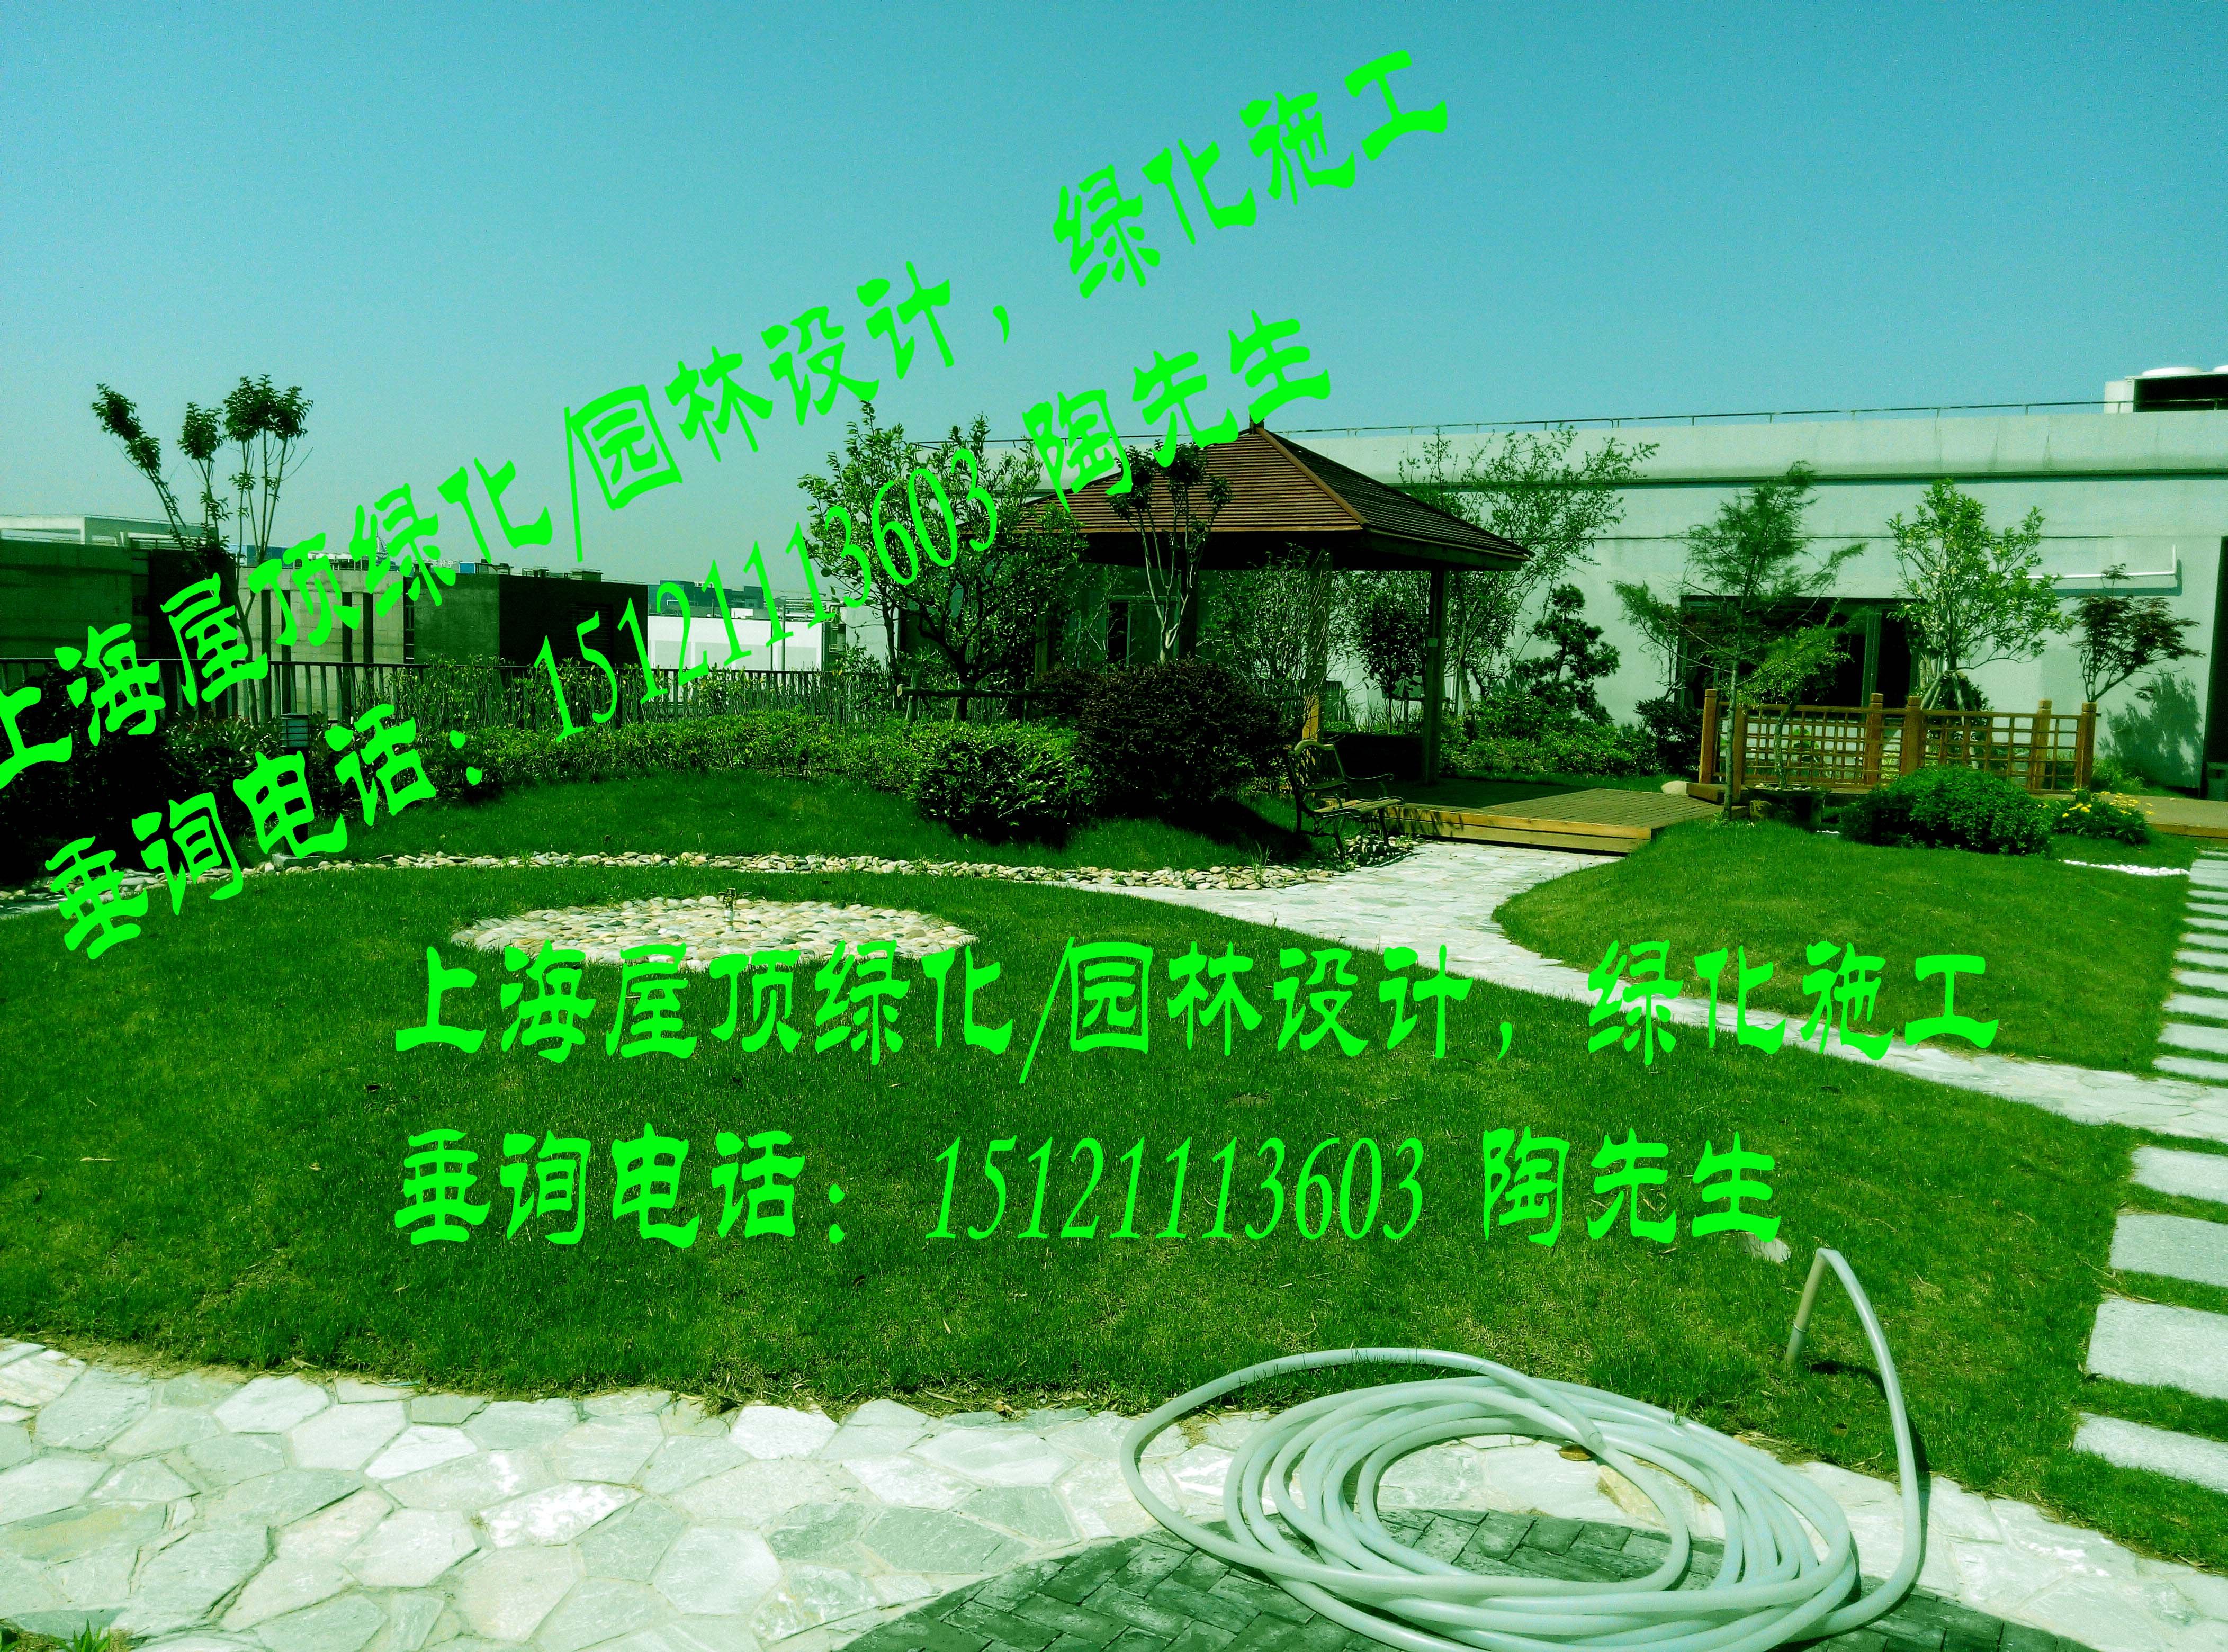 上海市别墅庭院景观绿化工程花园设计草皮厂家上海南汇别墅庭院景观绿化工程花园设计草皮(草坪)种植翻新修剪养护工程